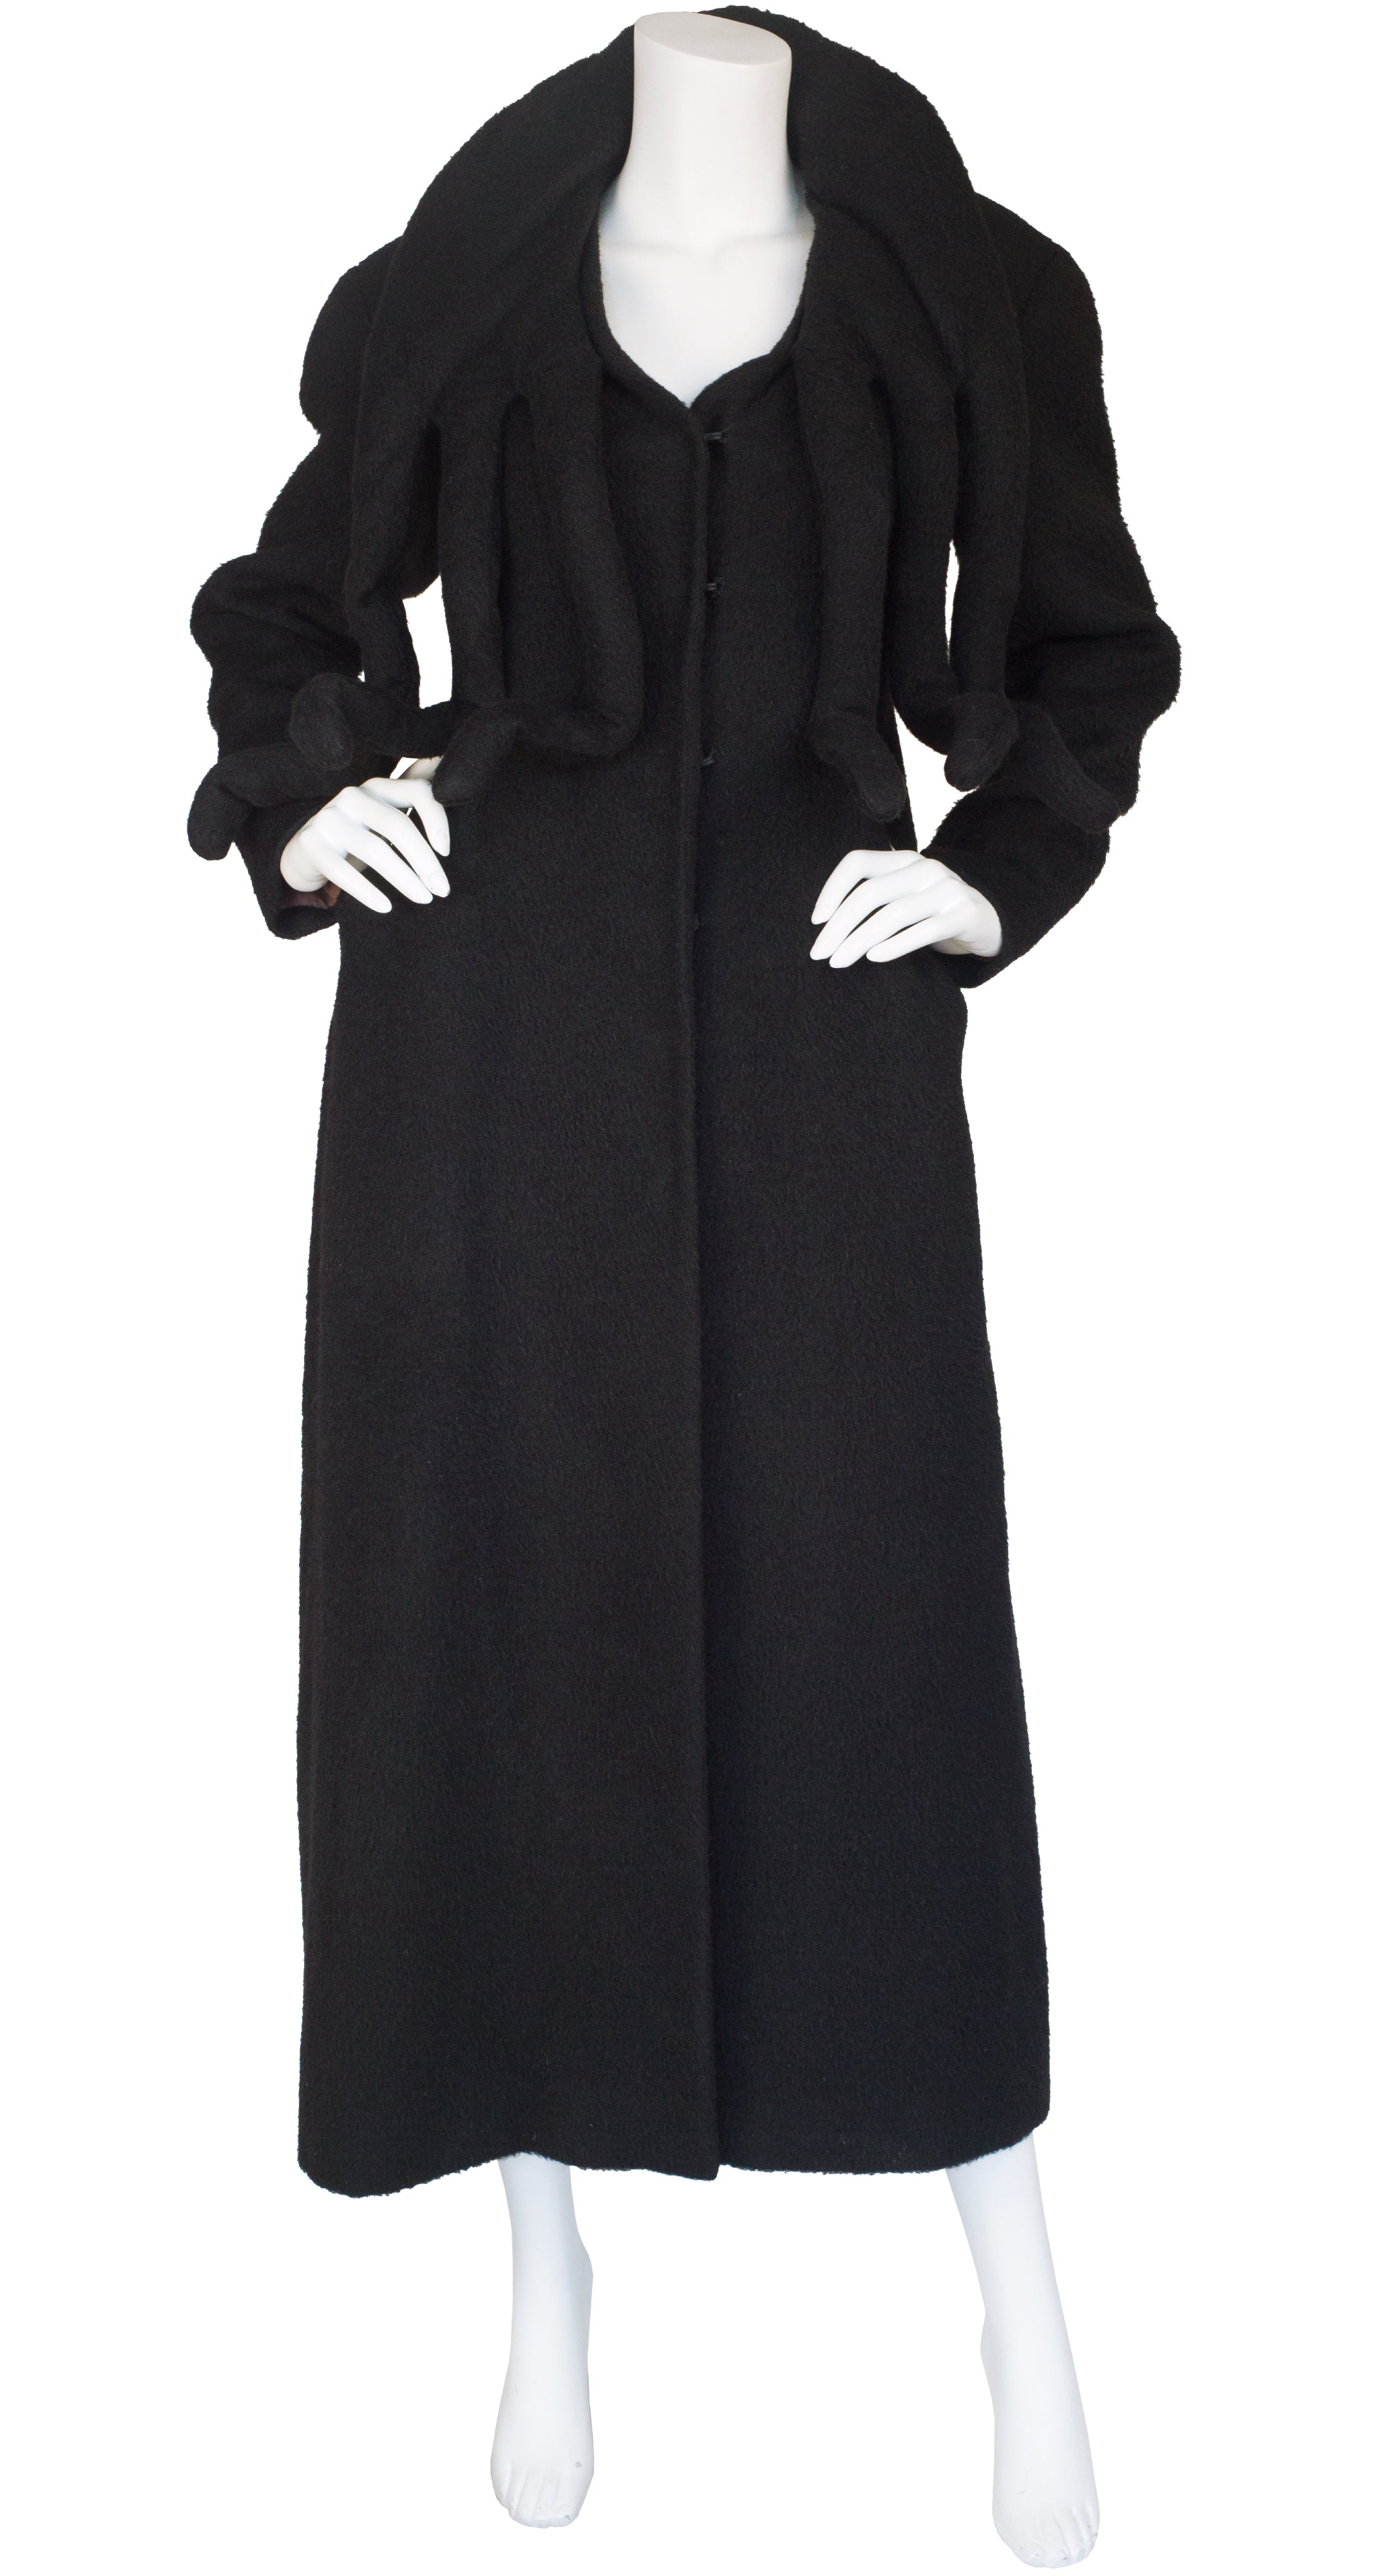 1980s Avant-Garde Tentacle Black Wool Coat